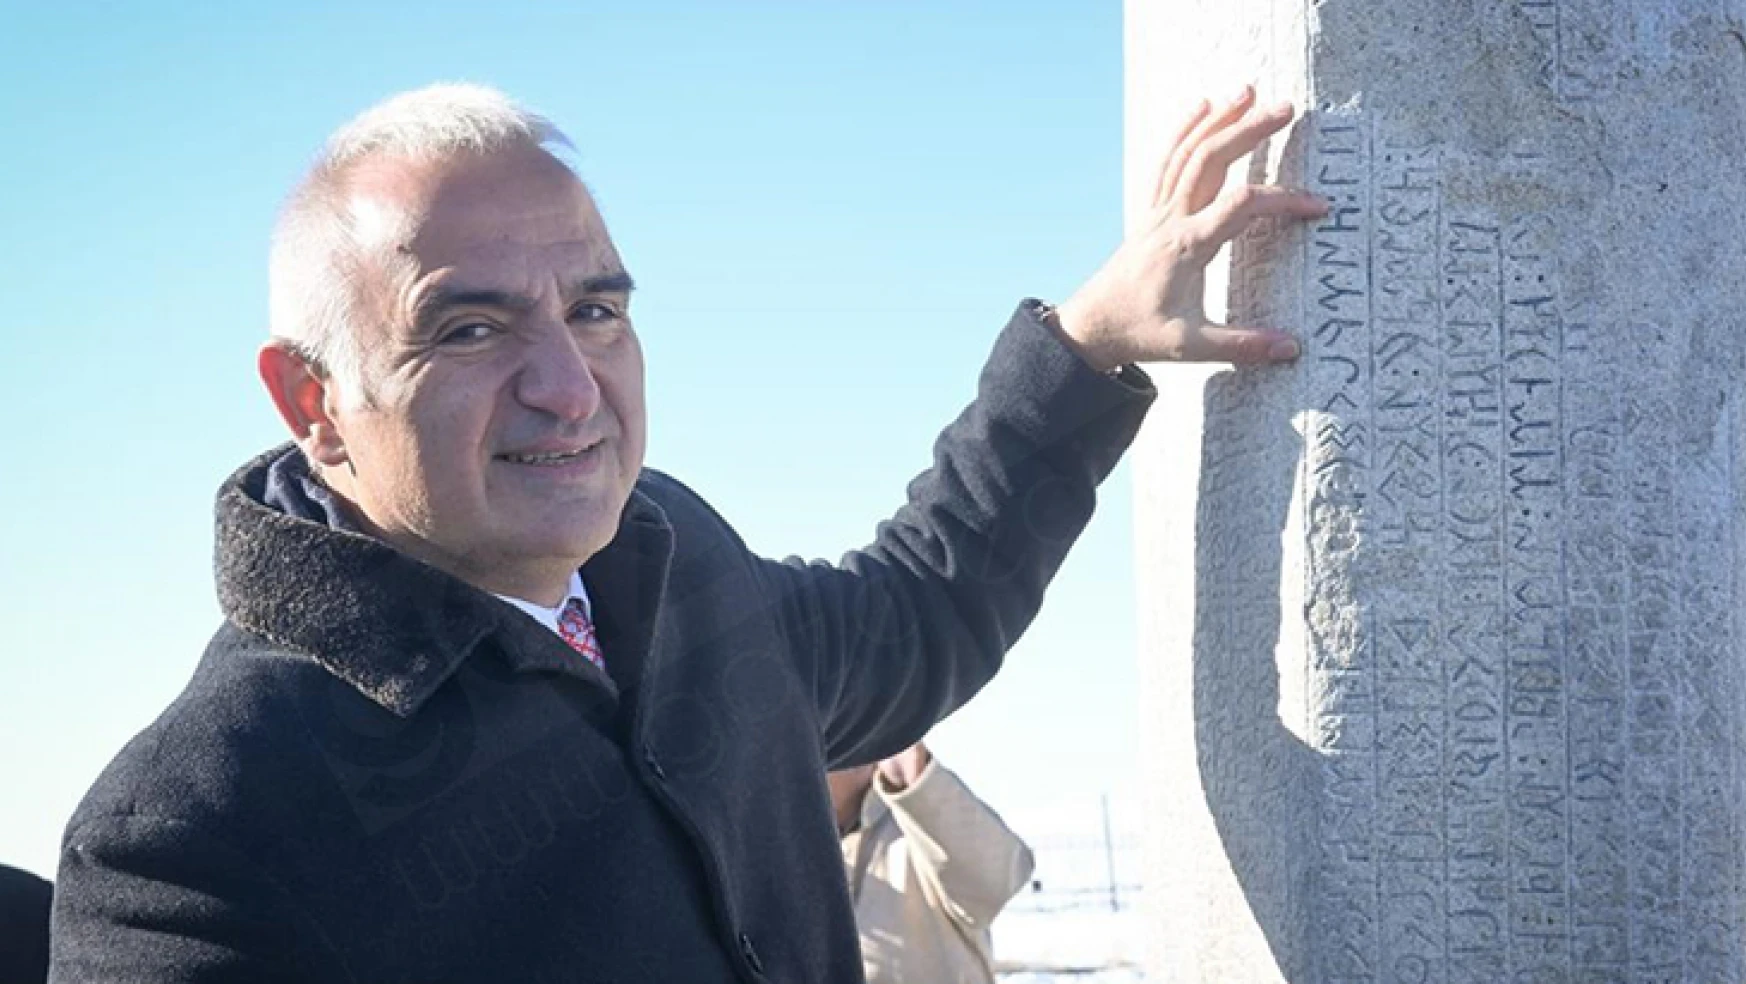 Türk tarihine ışık tutan yazıtlar kapalı müze alanında korunacak